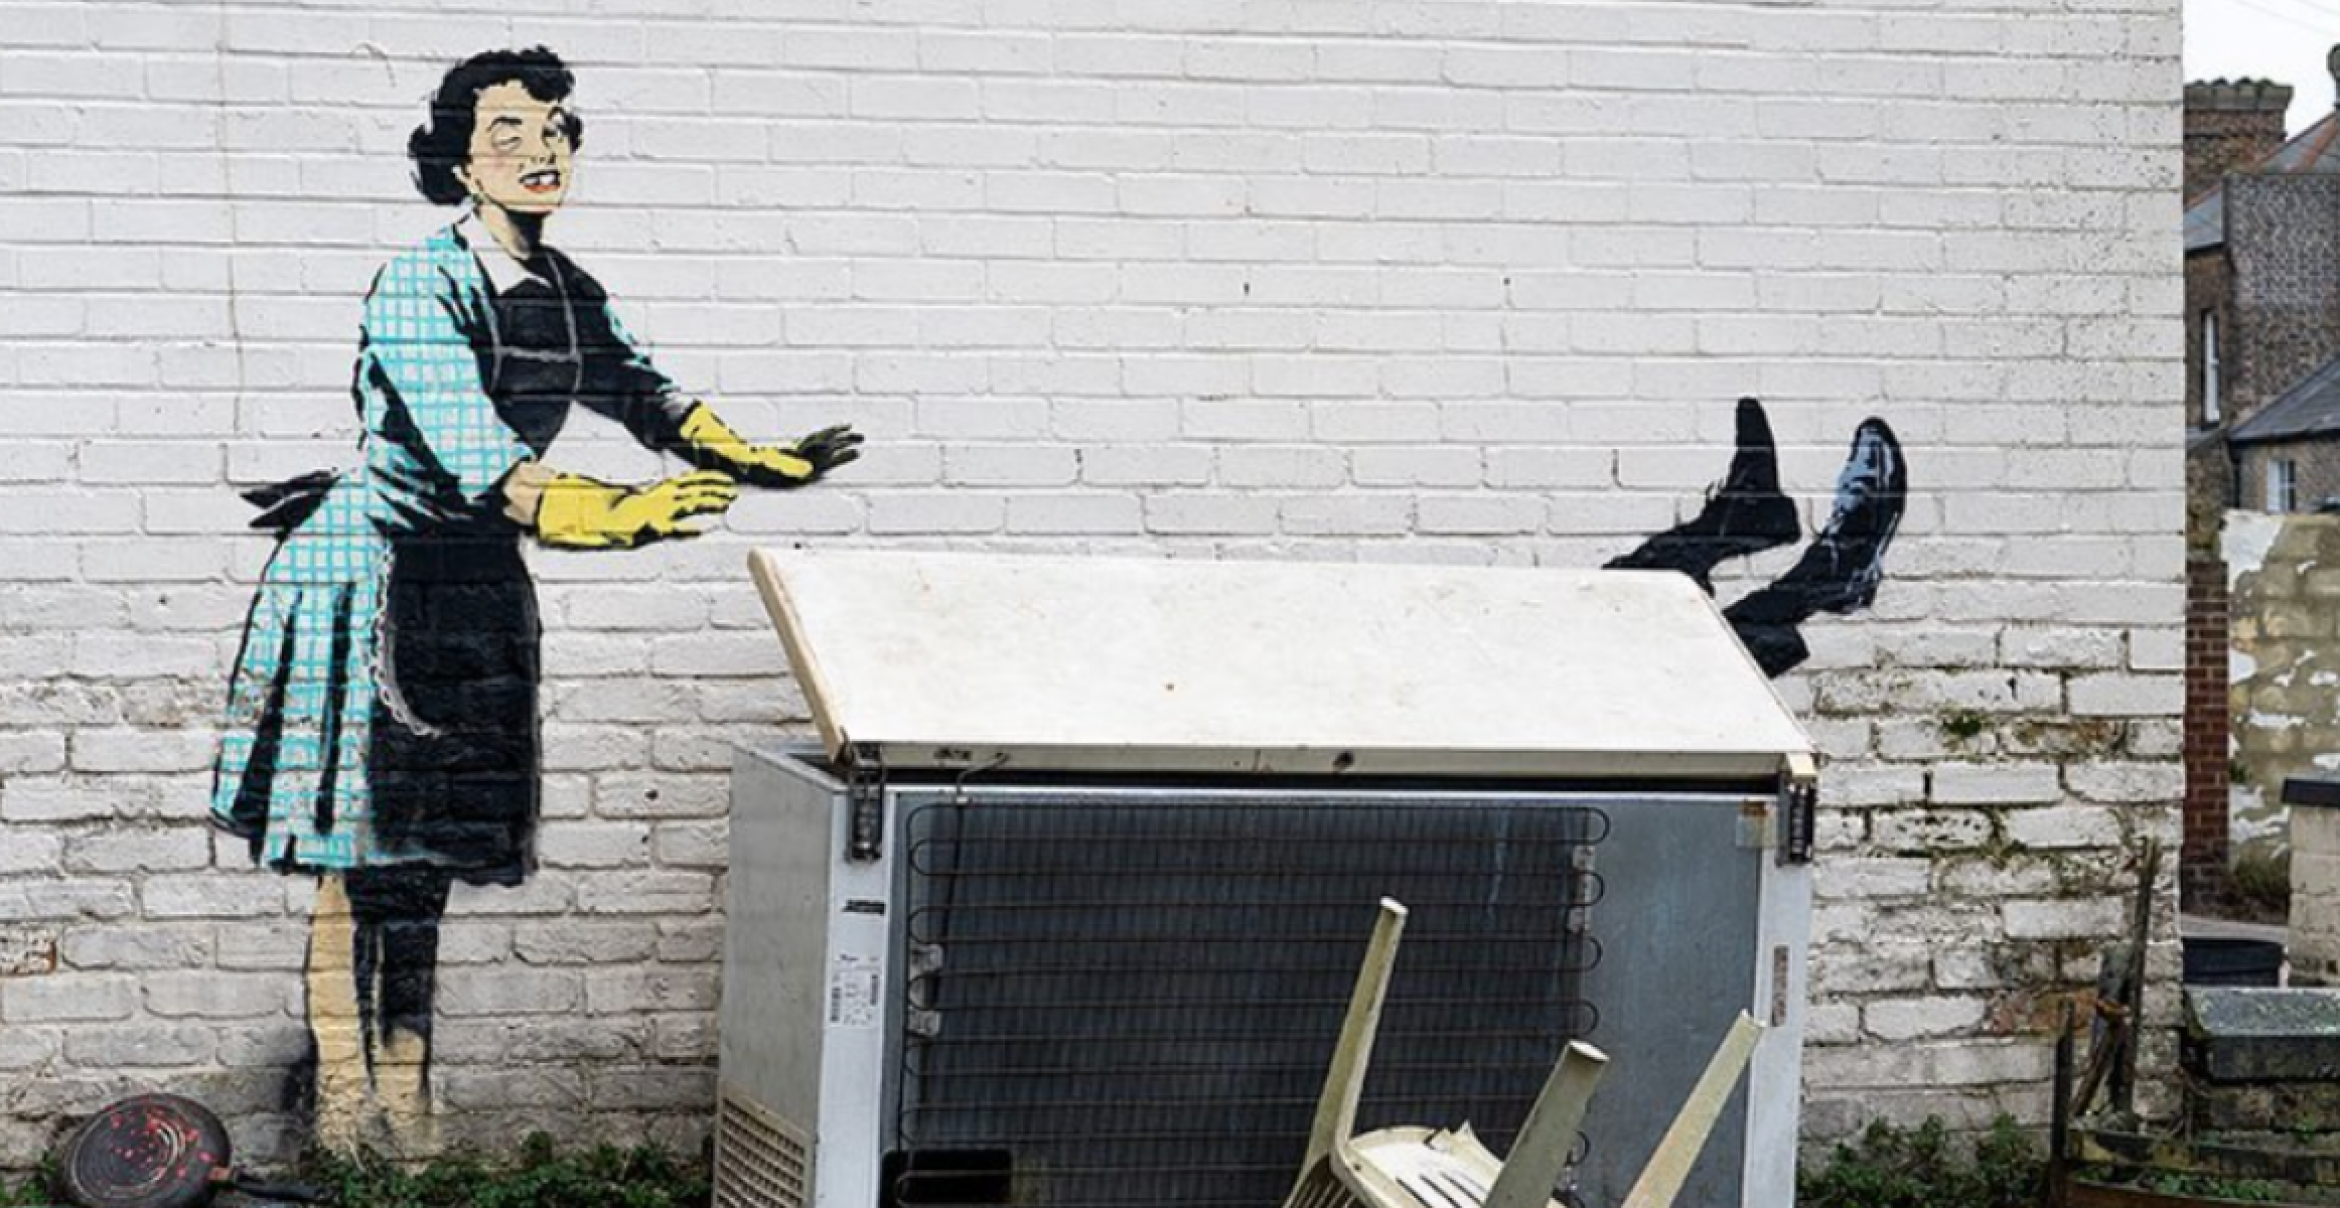 Zum Valentinstag: Banksy macht mit neuem Werk auf häusliche Gewalt aufmerksam